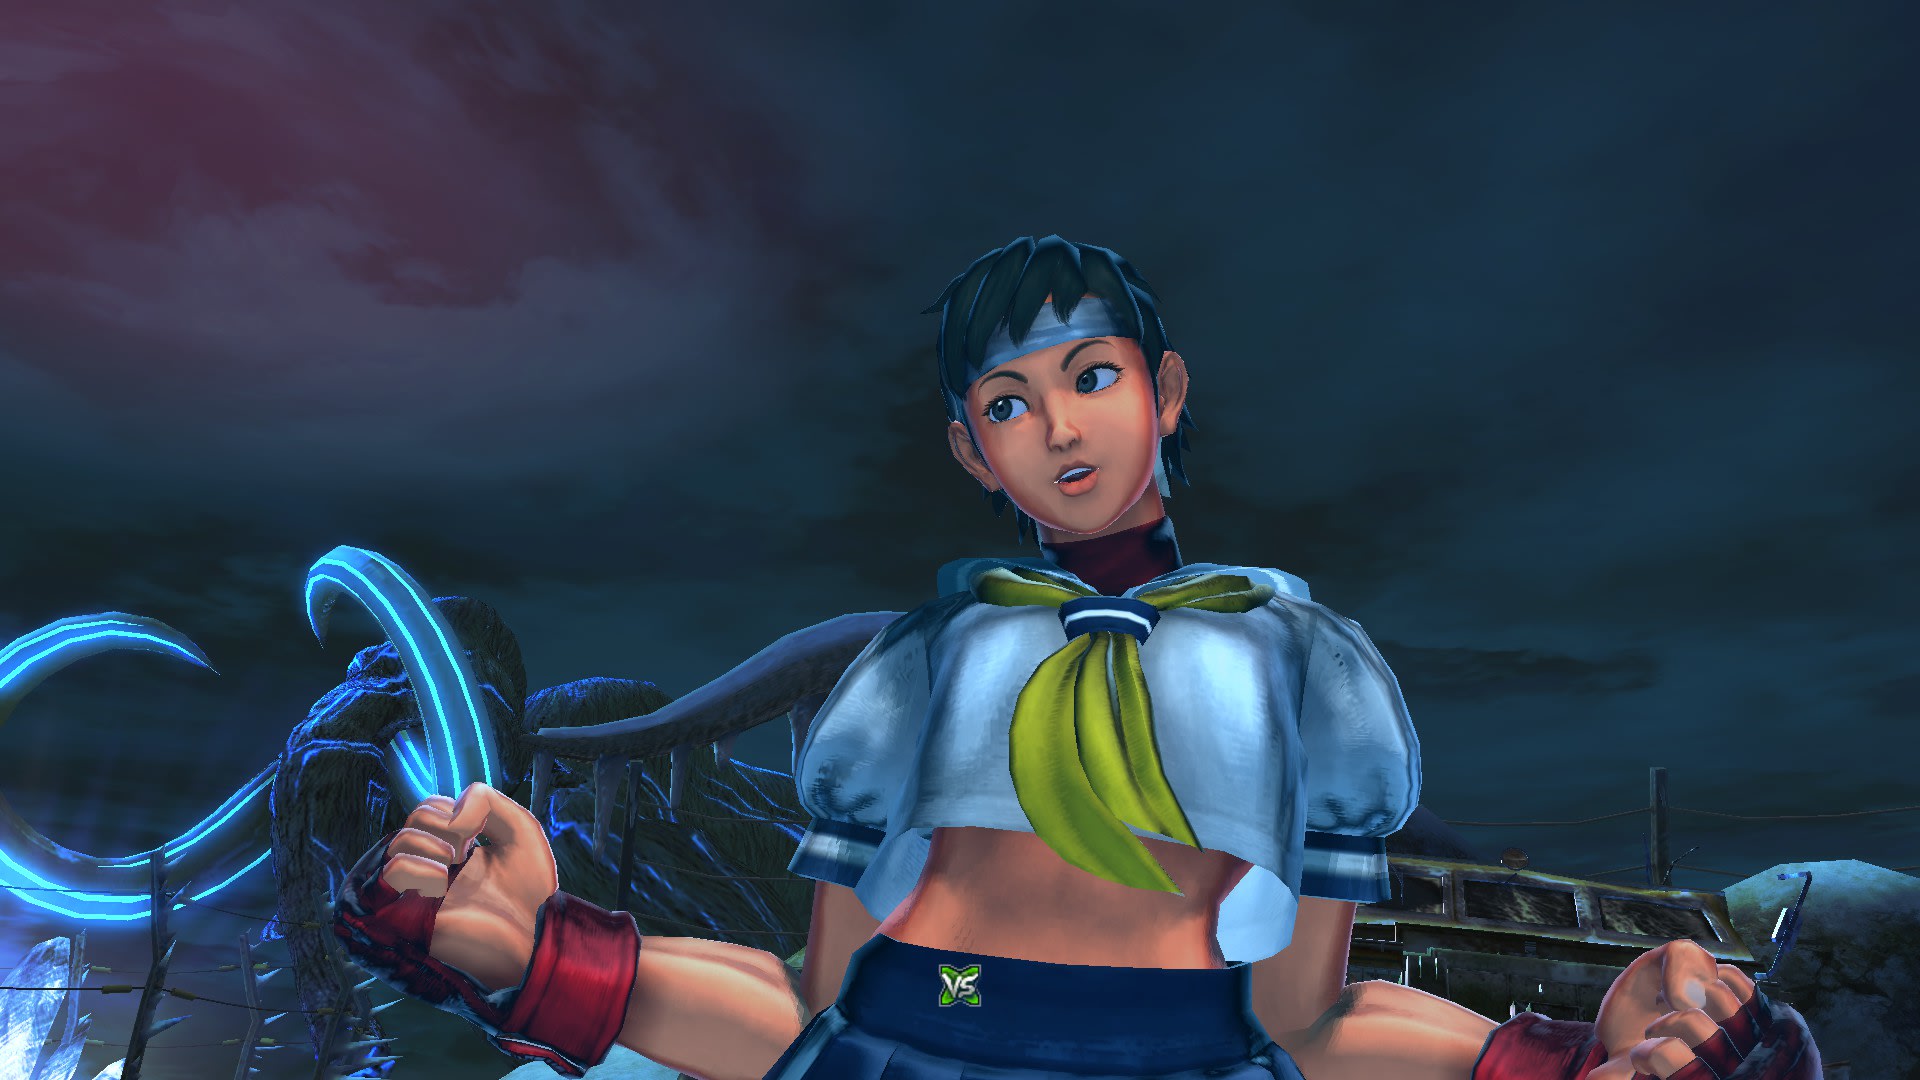 STREET FIGHTER X 鉄拳】 ストクロ PC版 さくら スクリーンショット1【Street Fighter X Tekken  sakura】 - 画像いろいろ